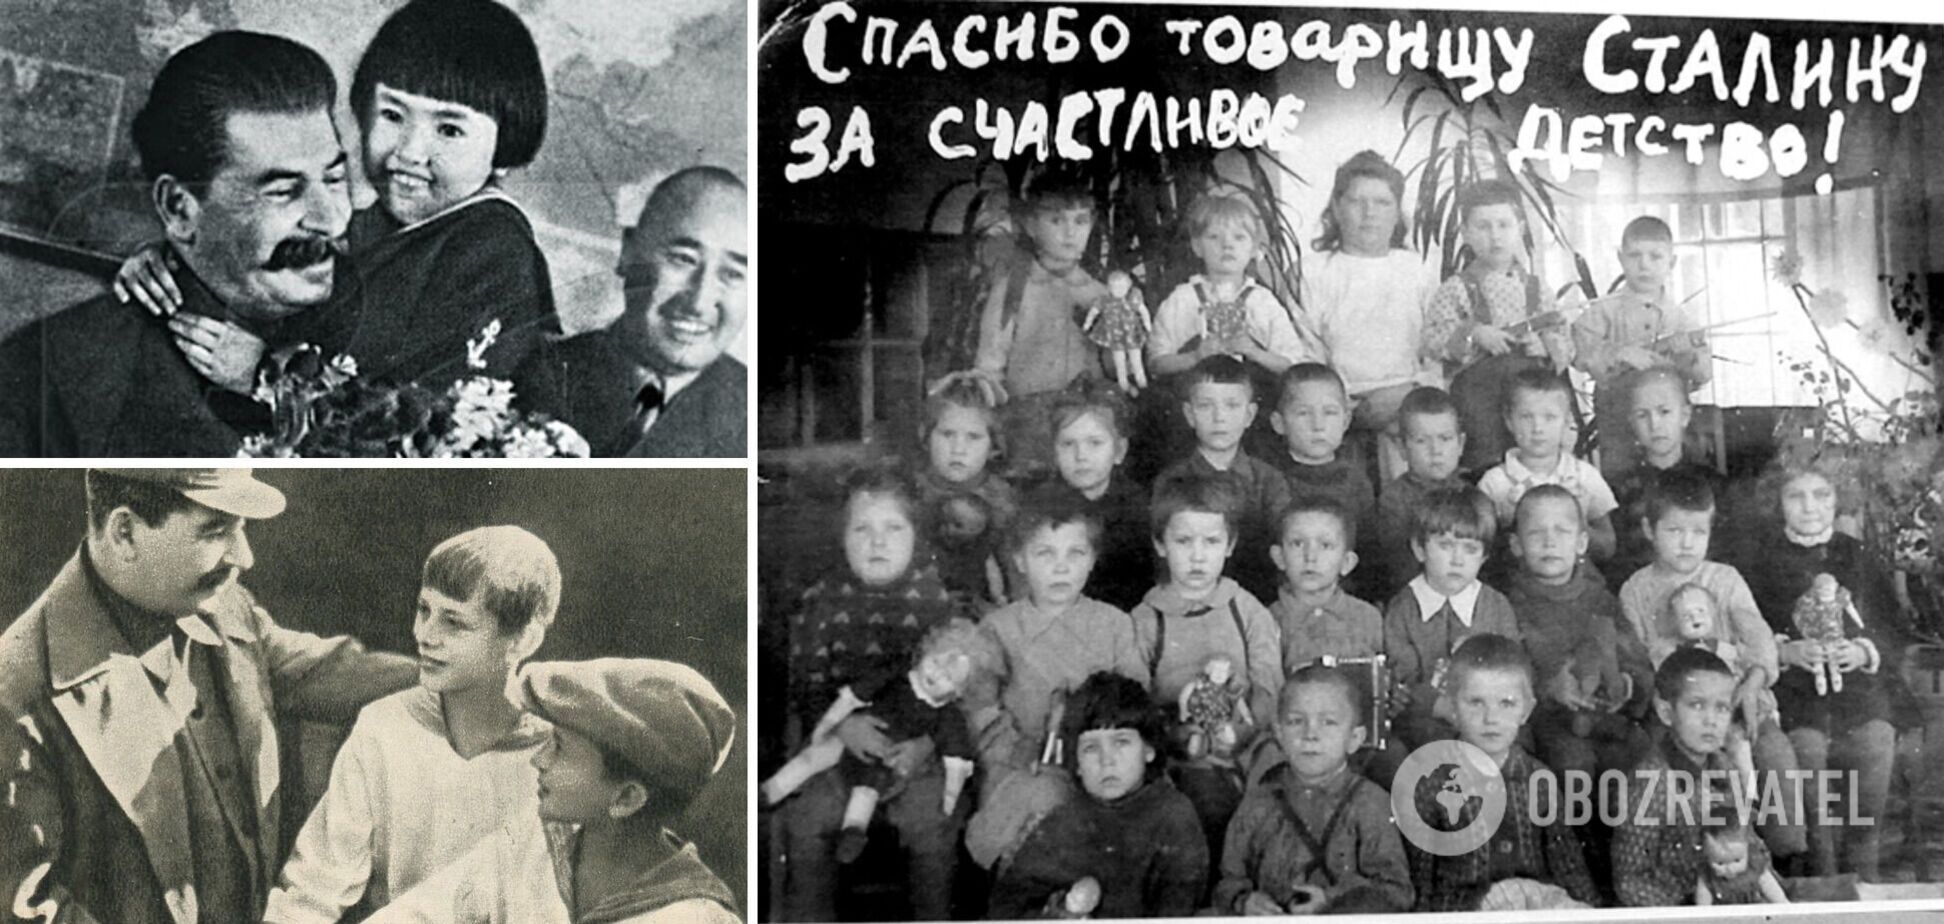 'Друг дітей товариш Сталін': що приховувала ця велетенська брехня